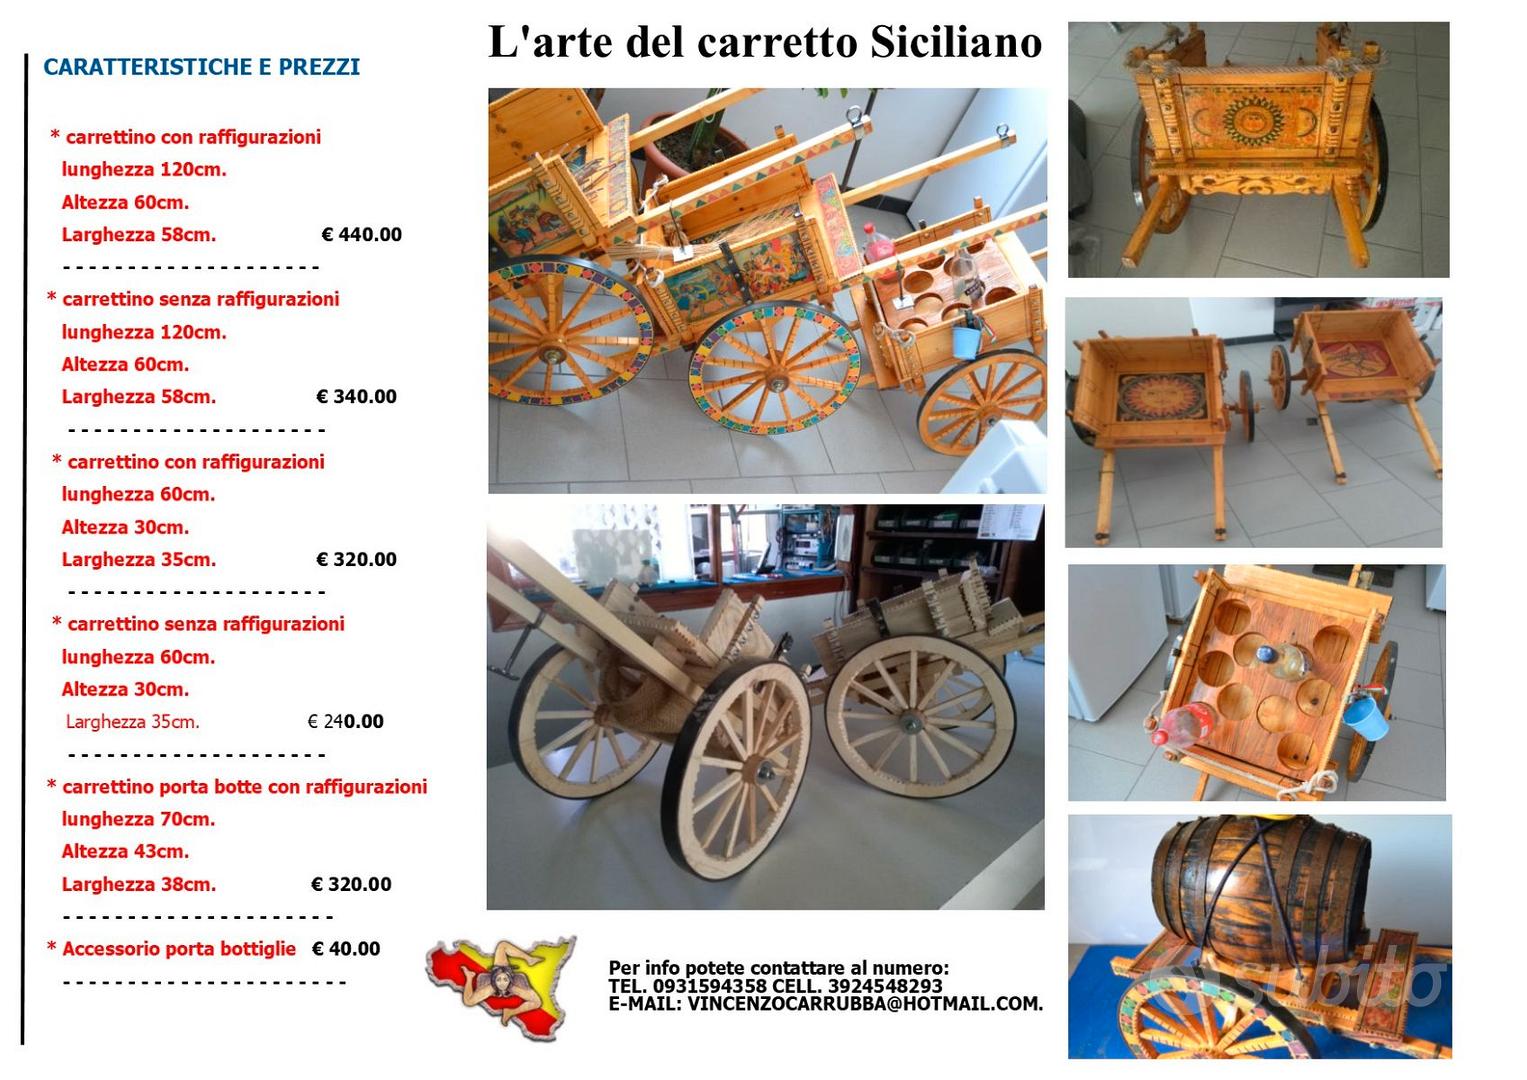 Ruote di Carretto Siciliano - Arredamento e Casalinghi In vendita a Siracusa